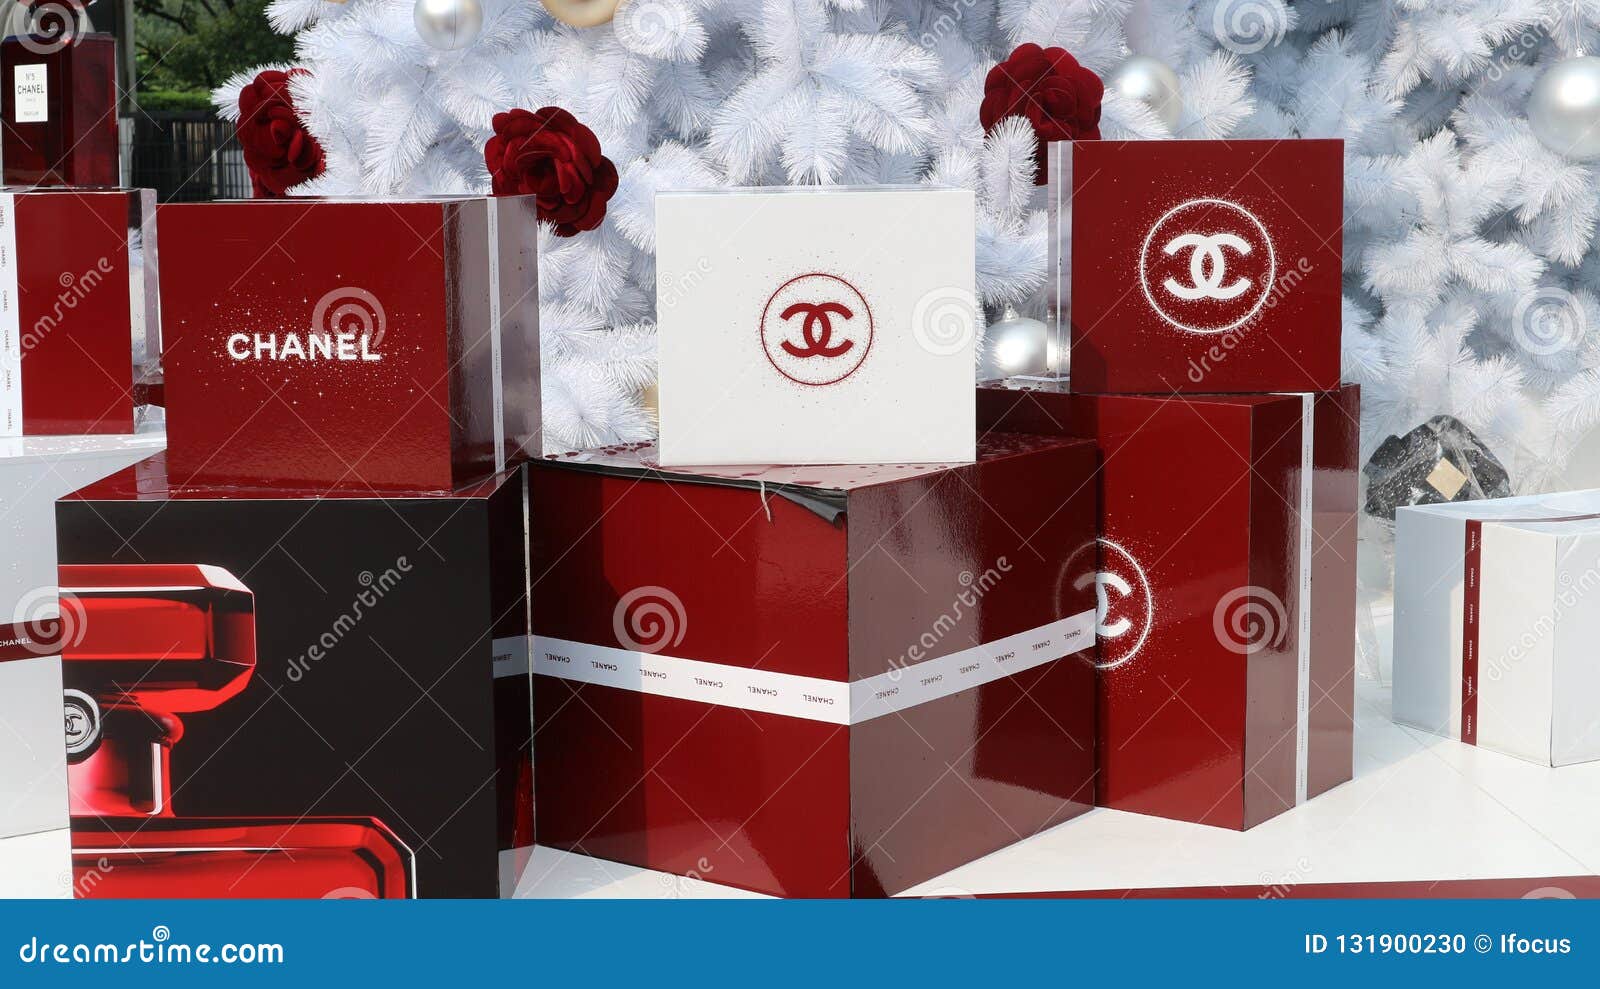 chanel christmas box